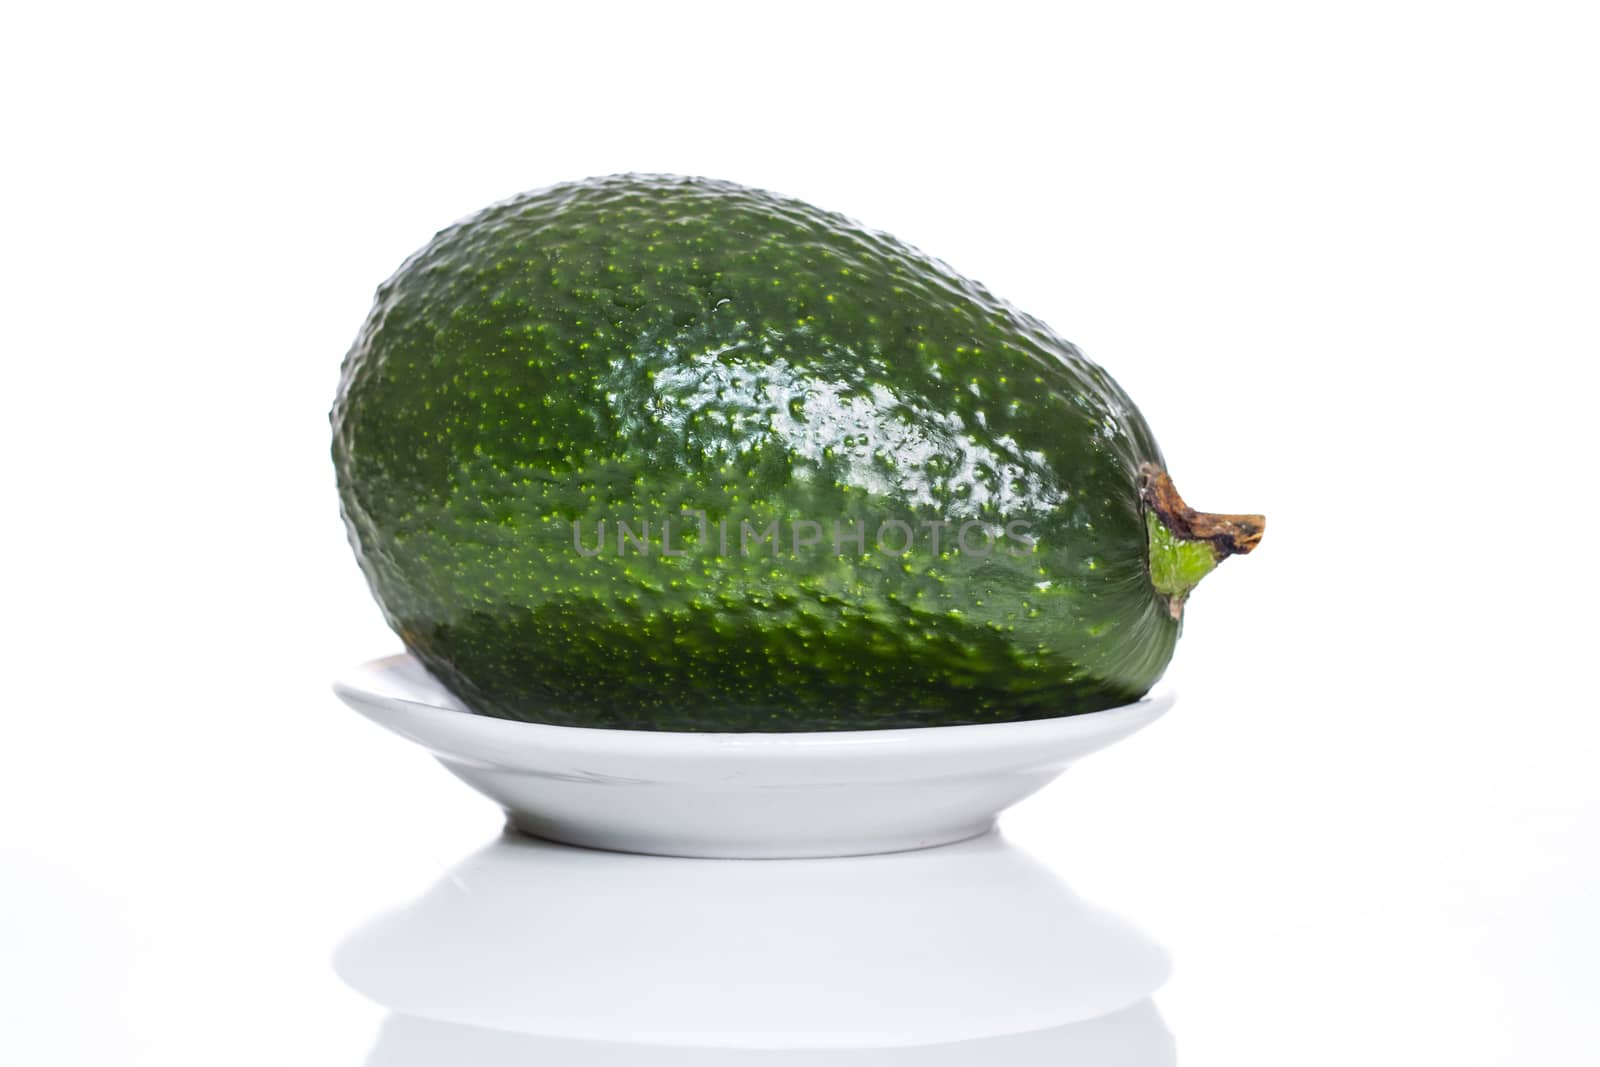 avocado on a plate by aziatik13